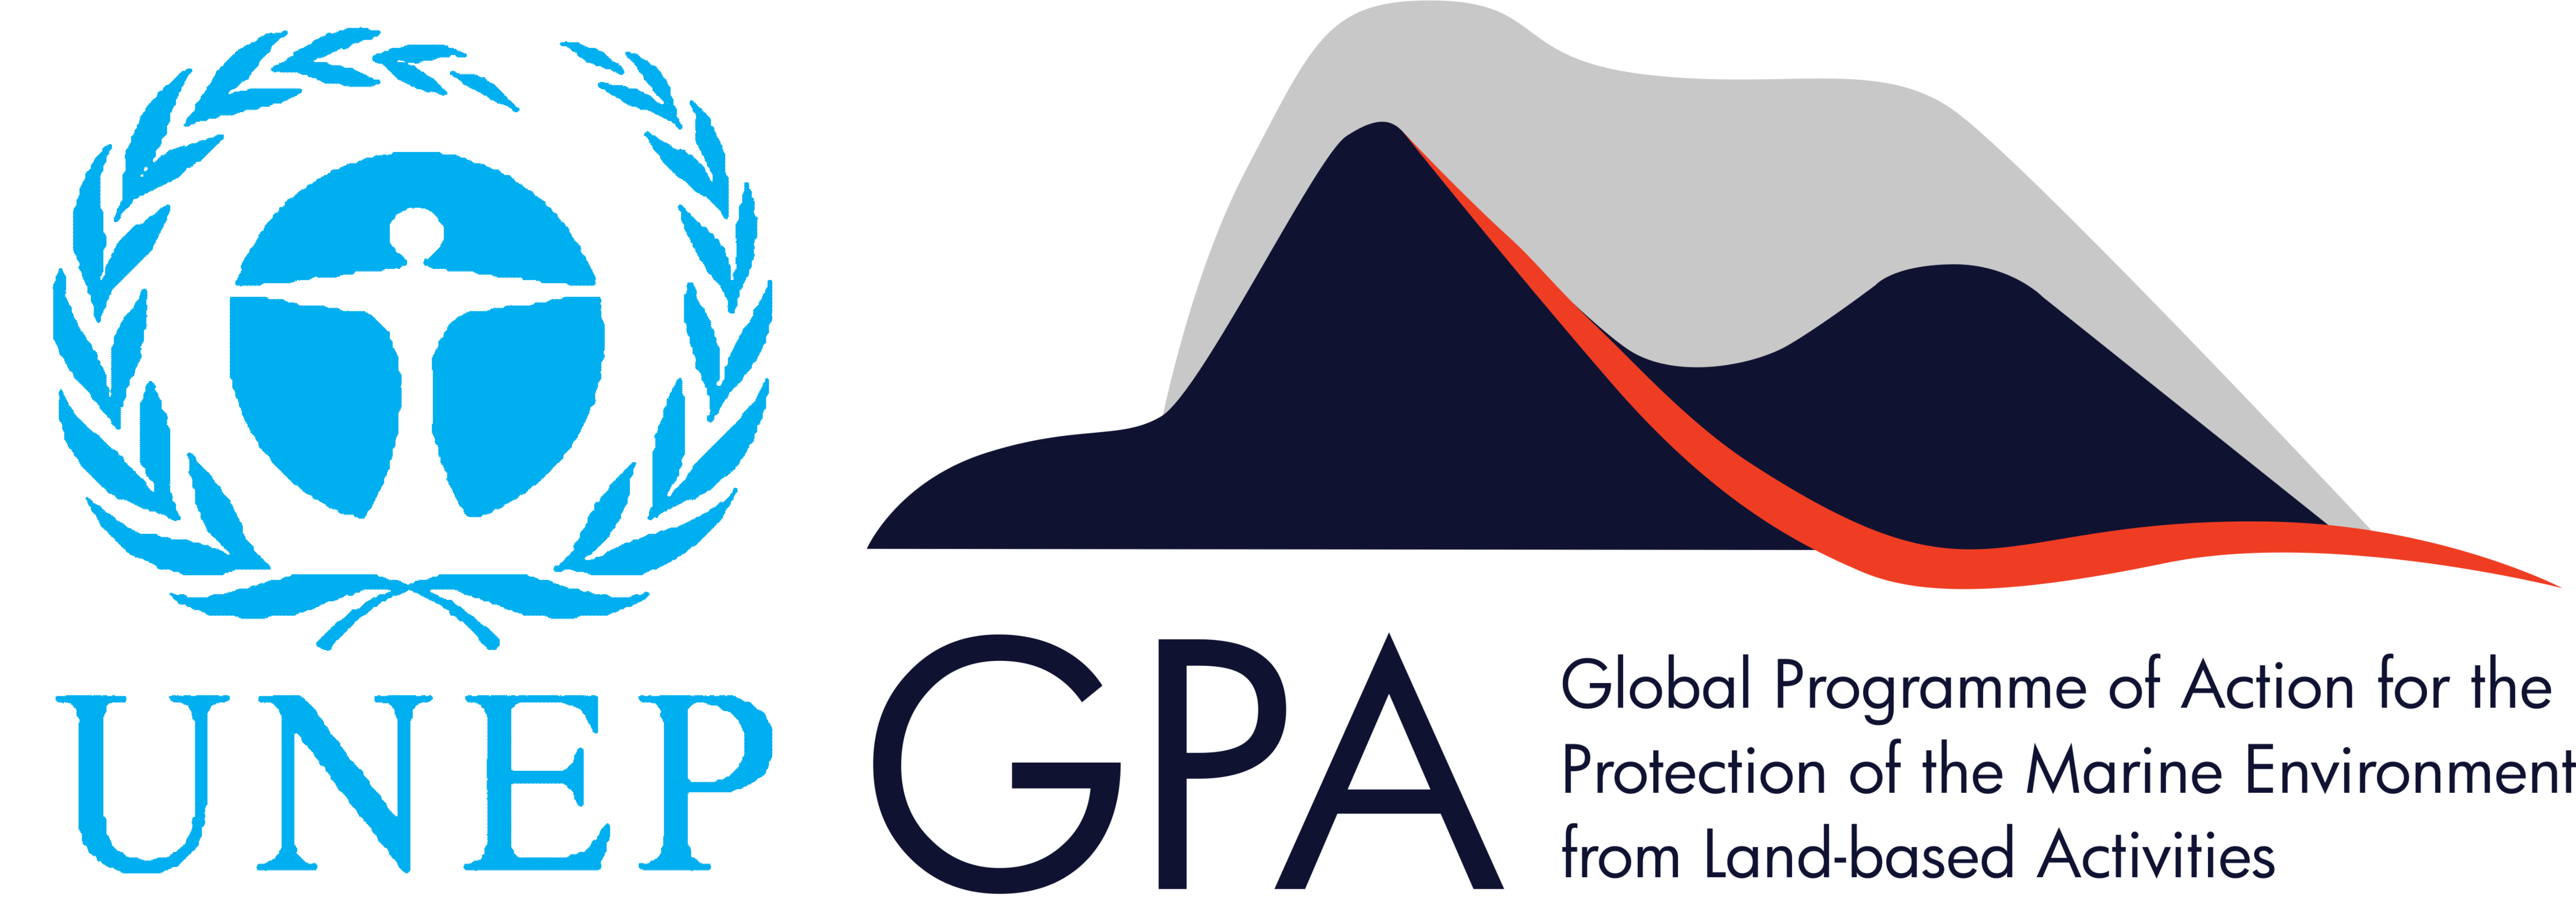 UNEP GPA logo